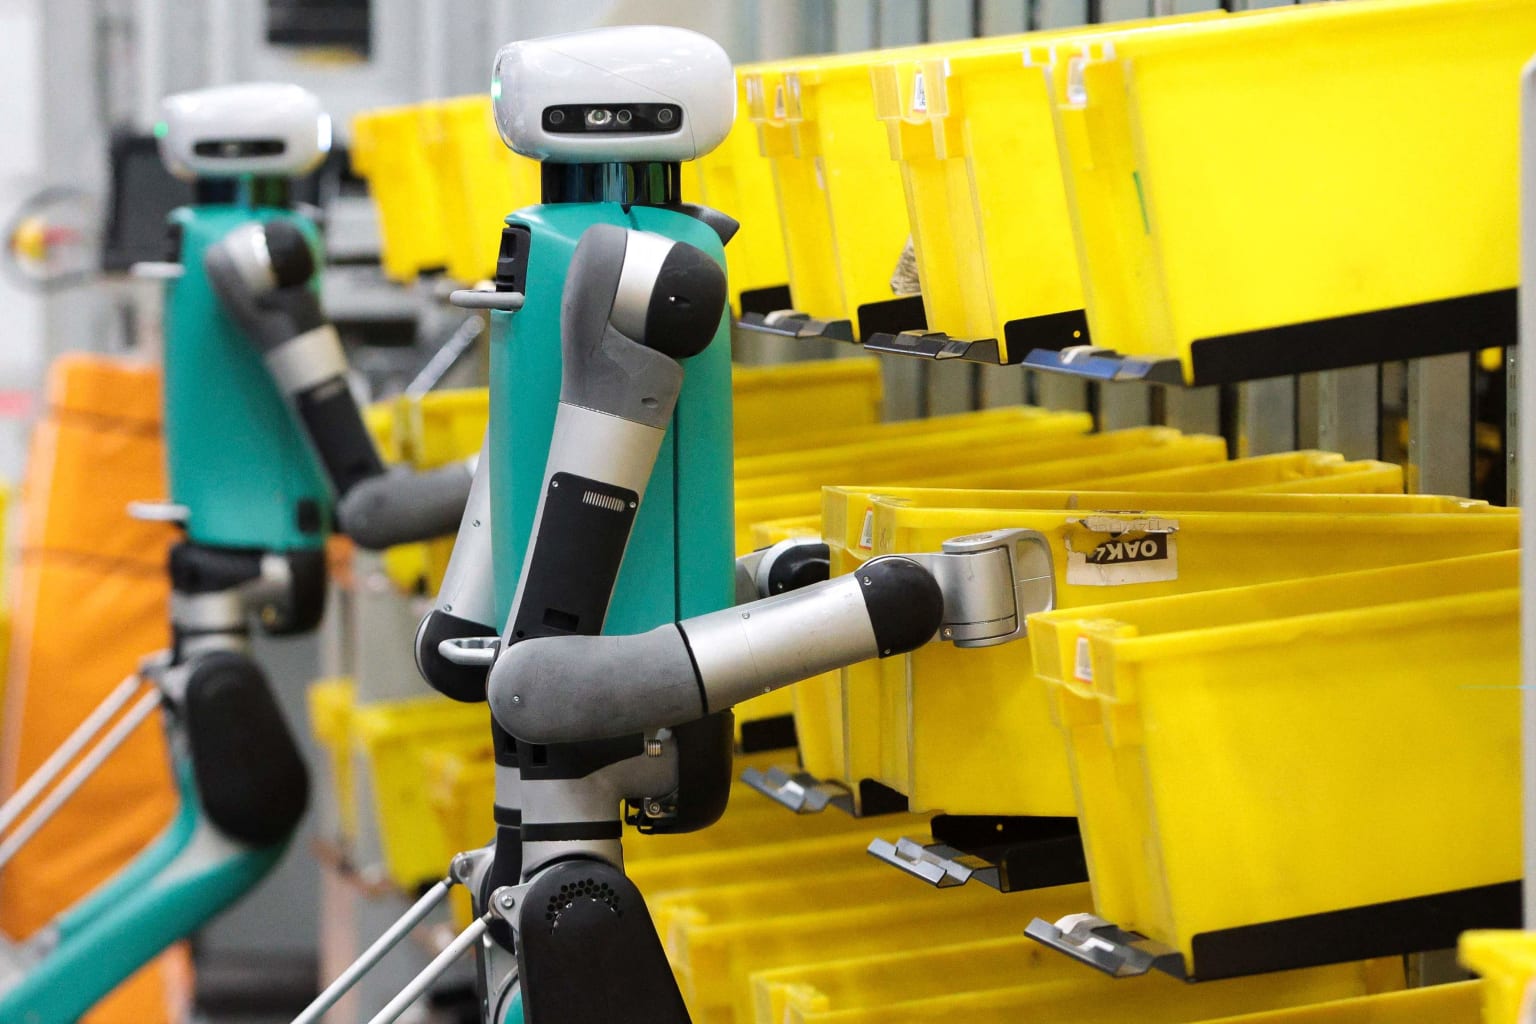 Amazon robots organizing bins.